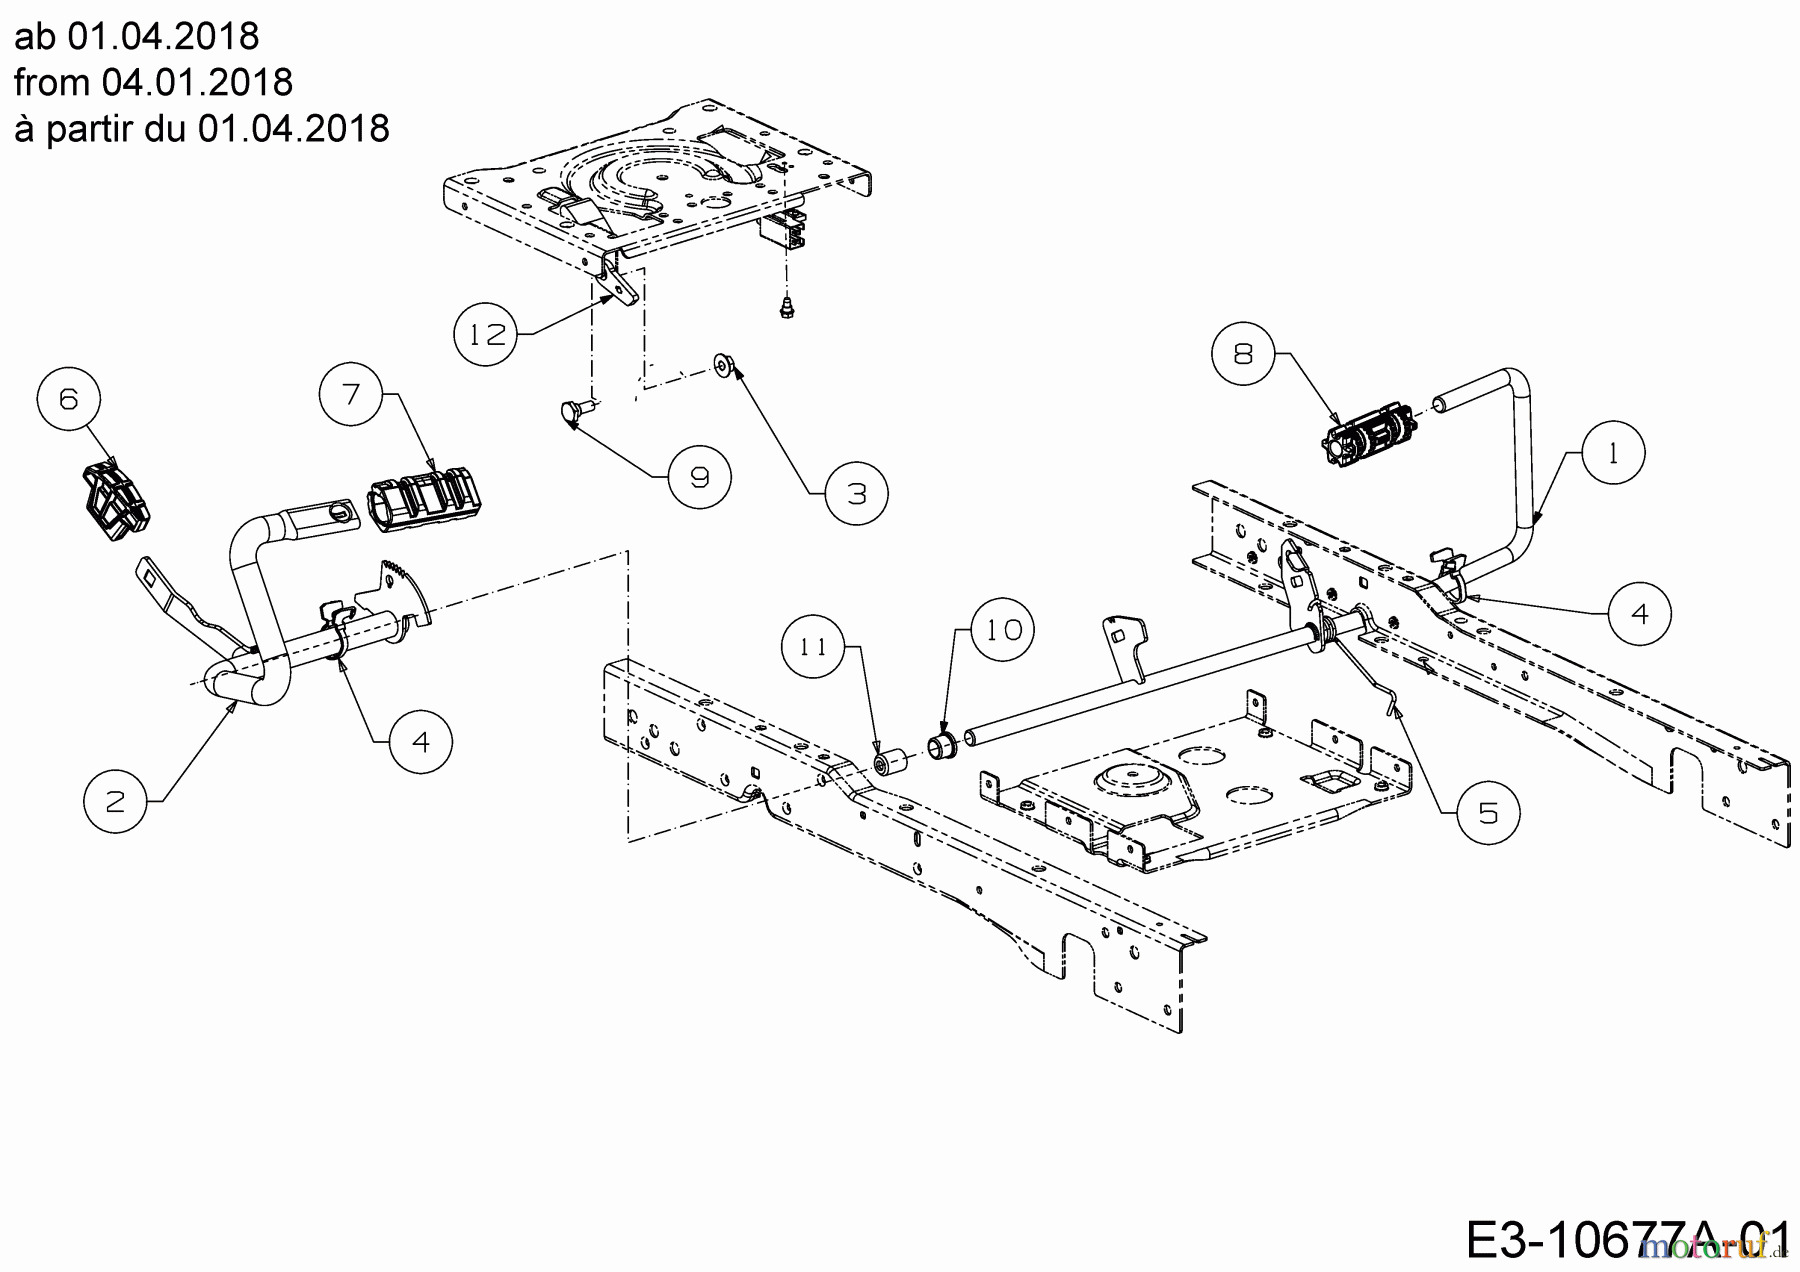  Cub Cadet Lawn tractors XT1 OS96 13A8A1CF603  (2019) Pedals from 04.01.2018